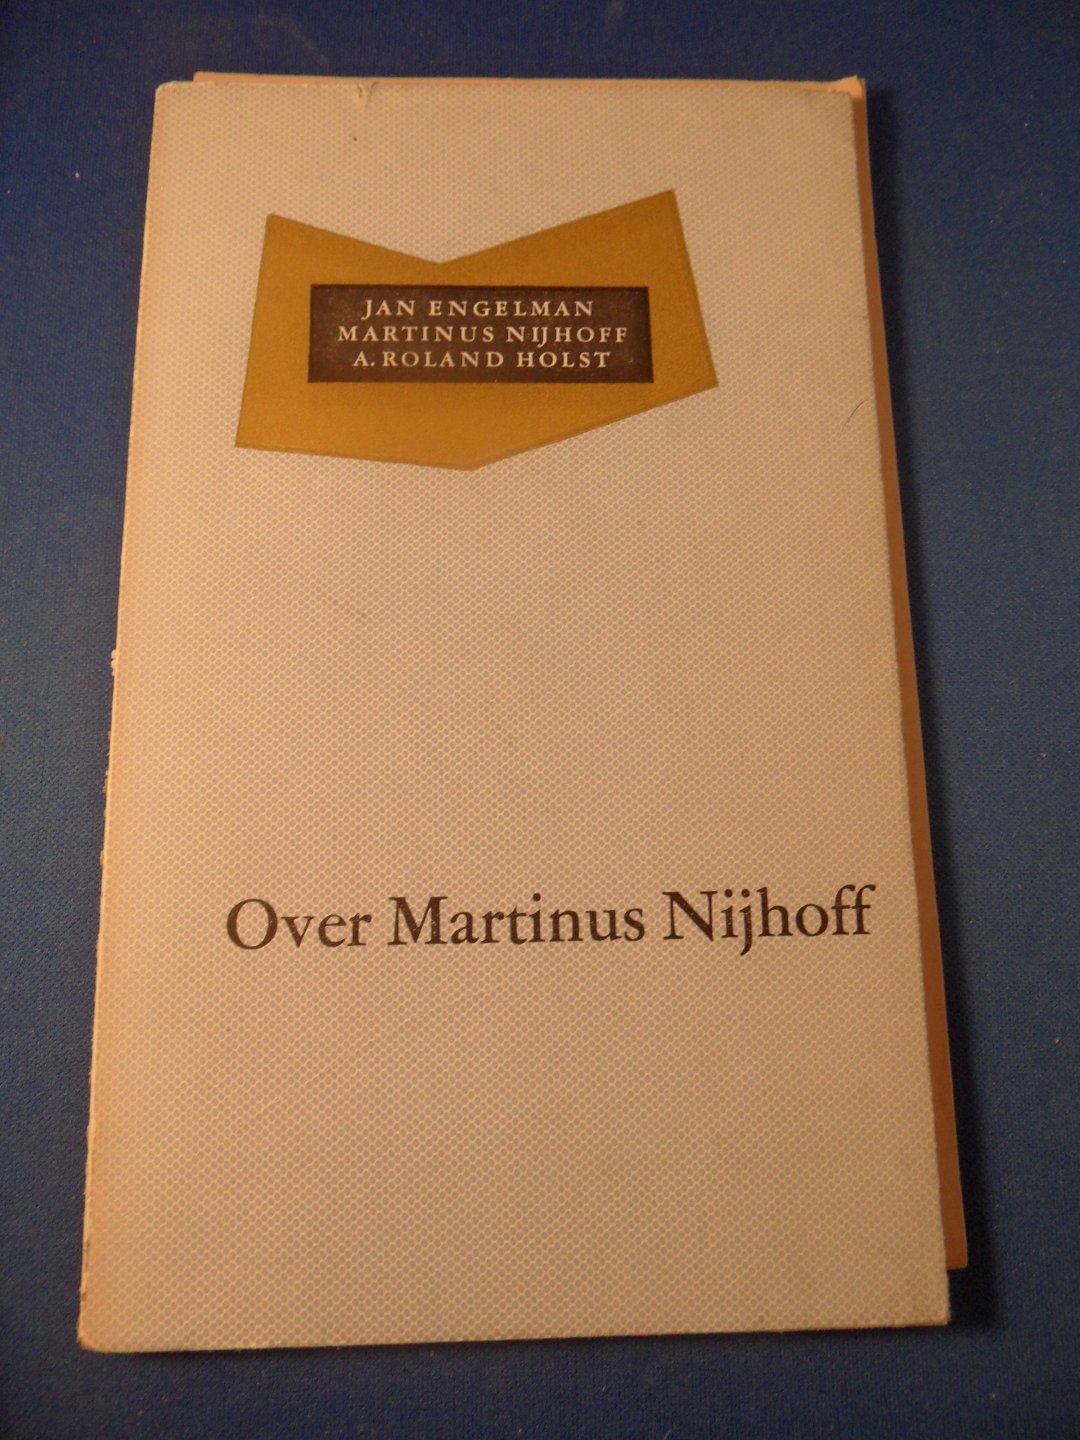 Engelman, Jan - Nijhoff, Martinus - Roland Holst, A. - Over Martinus Nijhoff